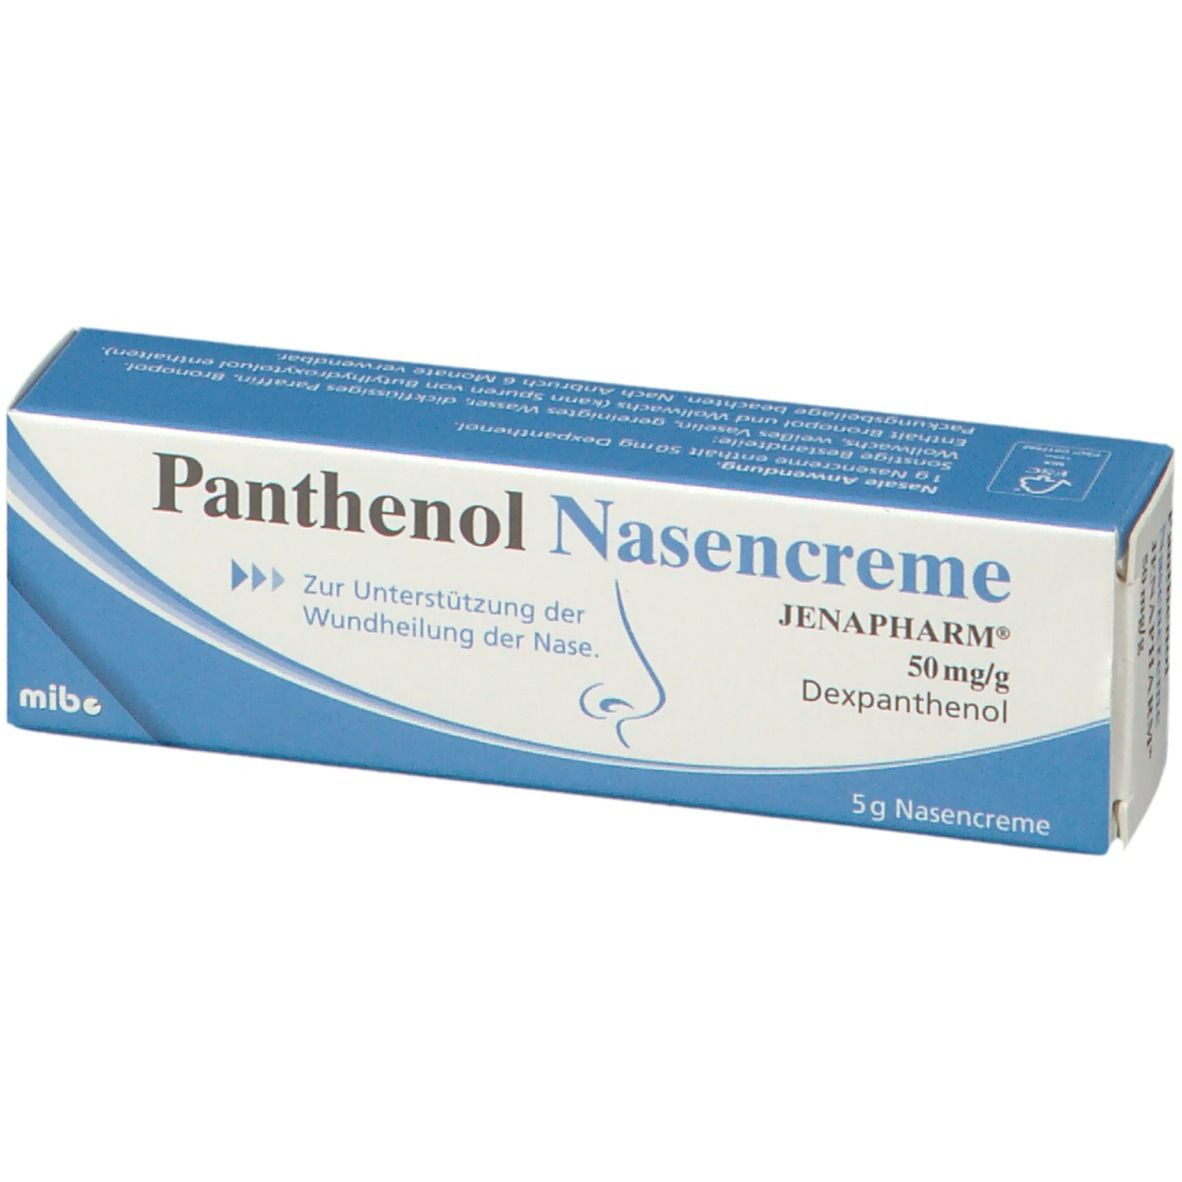 Panthenol Nasencreme JENAPHARM®